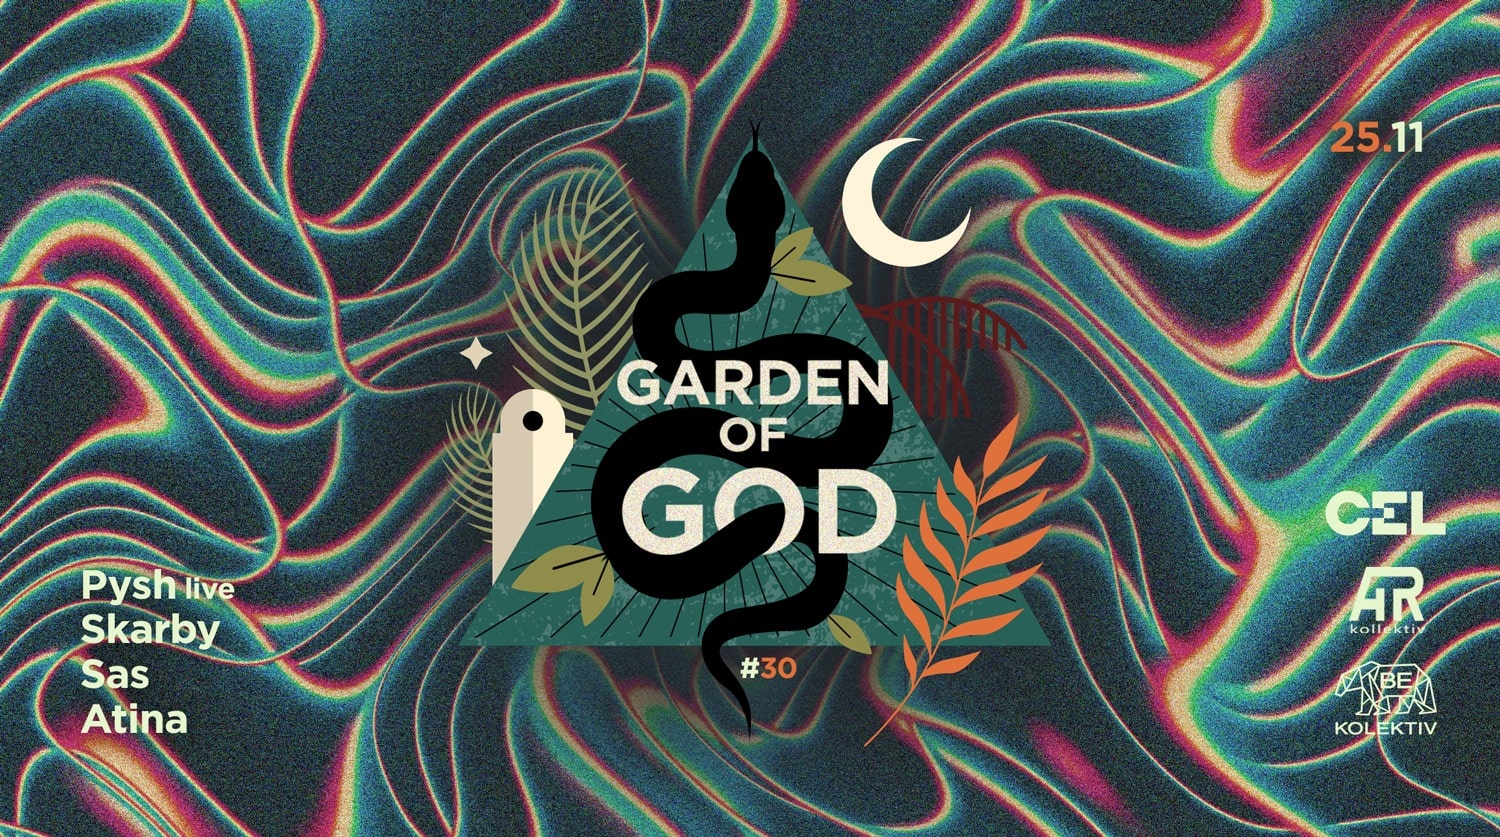 CEL x Garden of God #30: Pysh live / Skarby